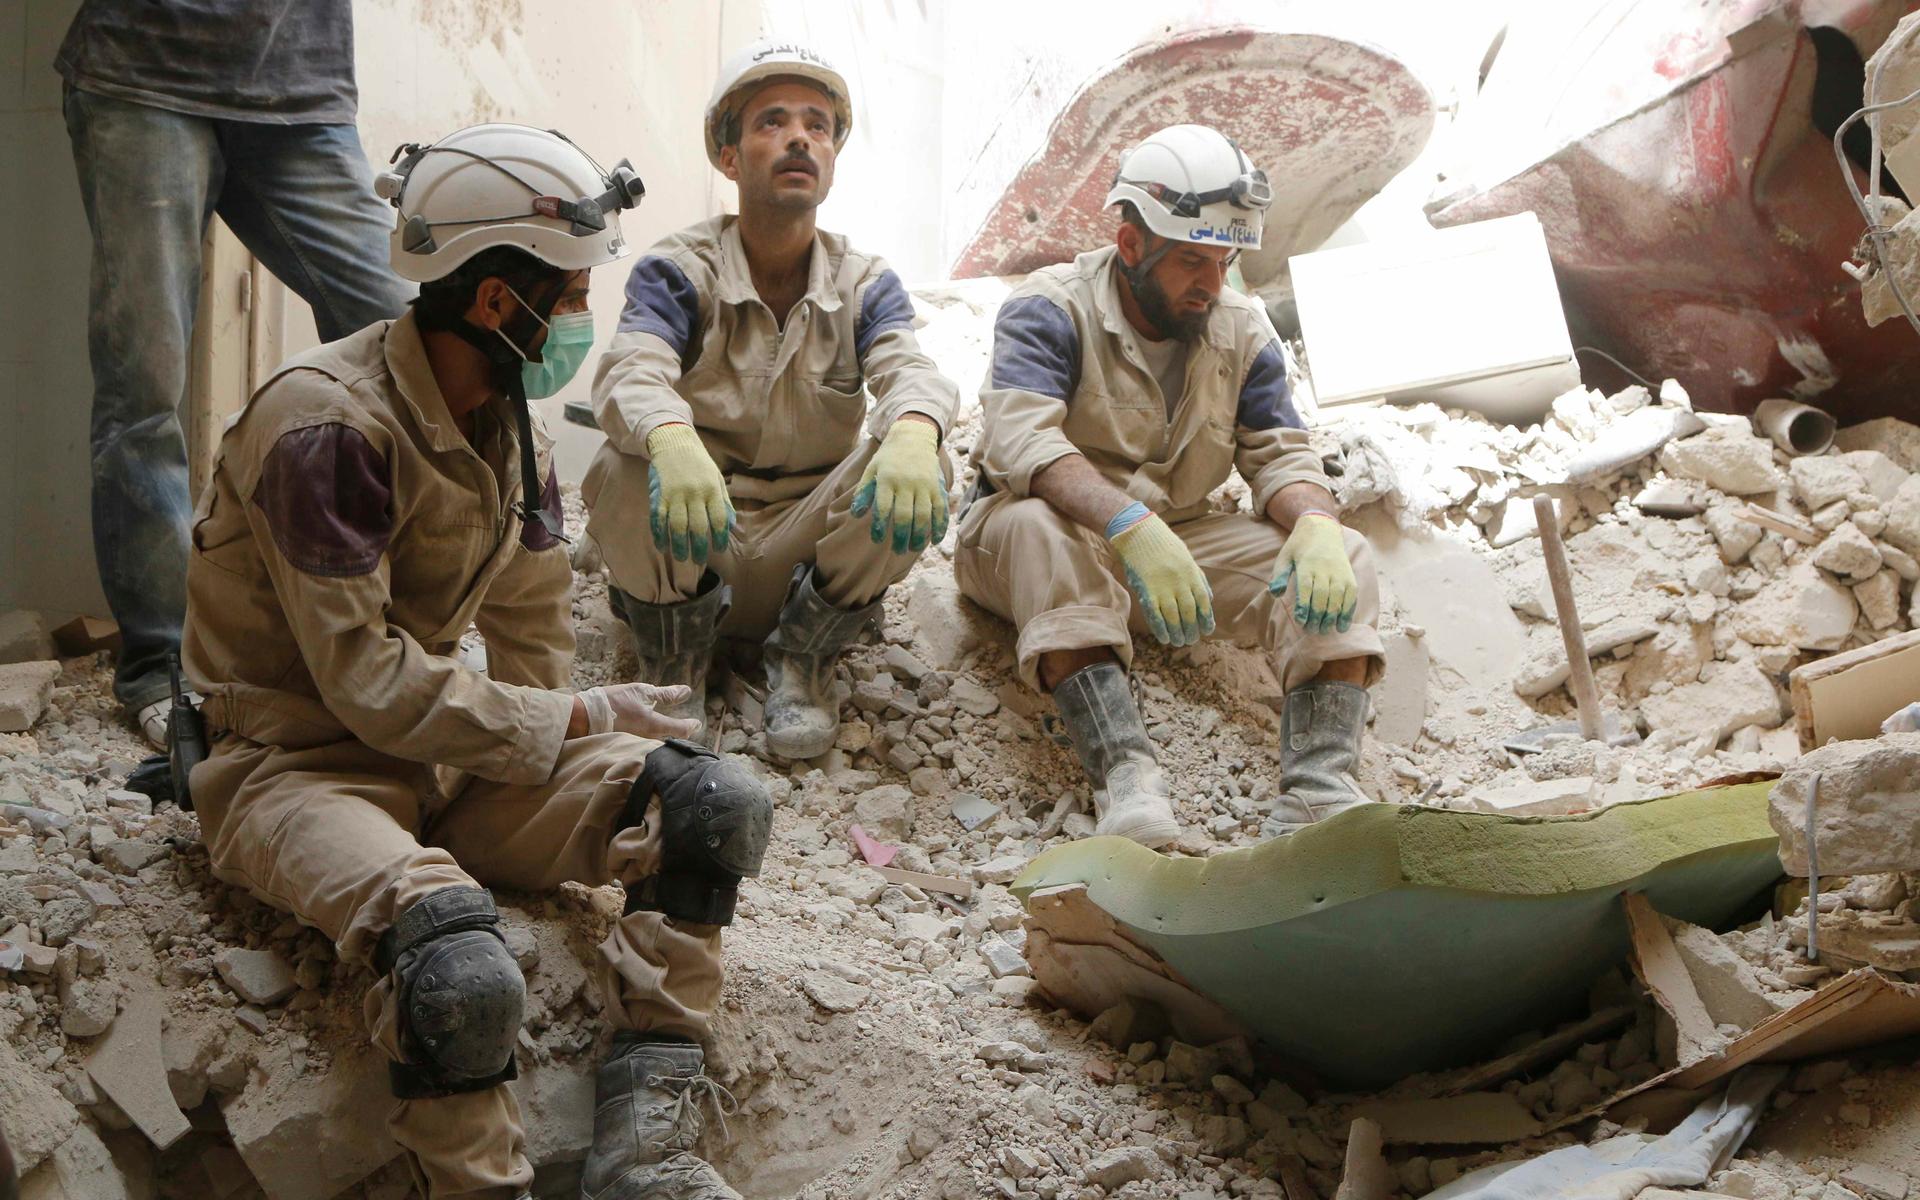 Three men sit in rubble in white helmets